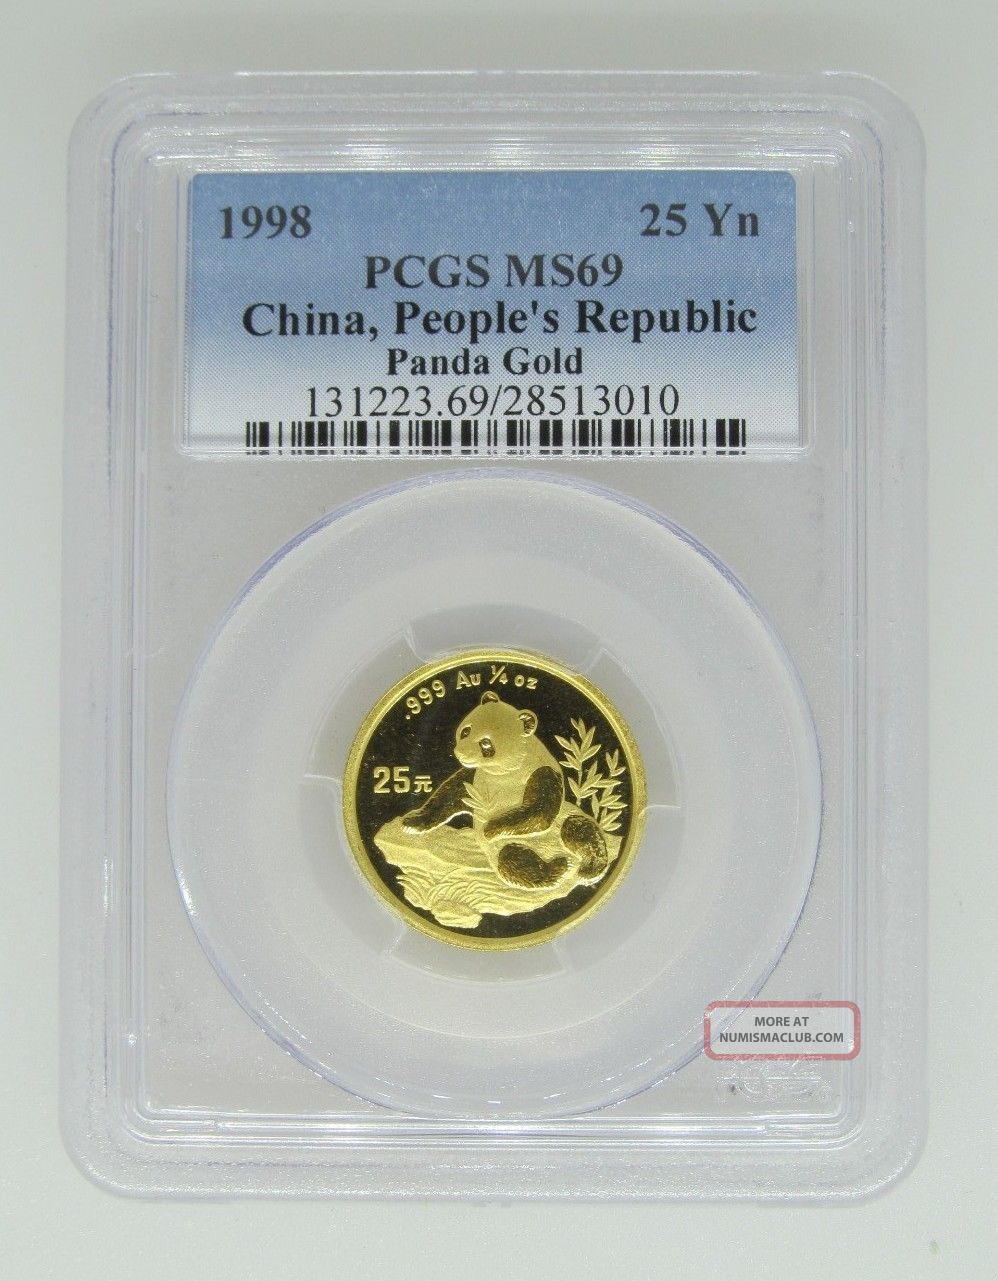 1998 Pcgs Ms69 China People ' S Republic.  999 Gold Panda - 25 Yn 1/4 - Very Rare China photo